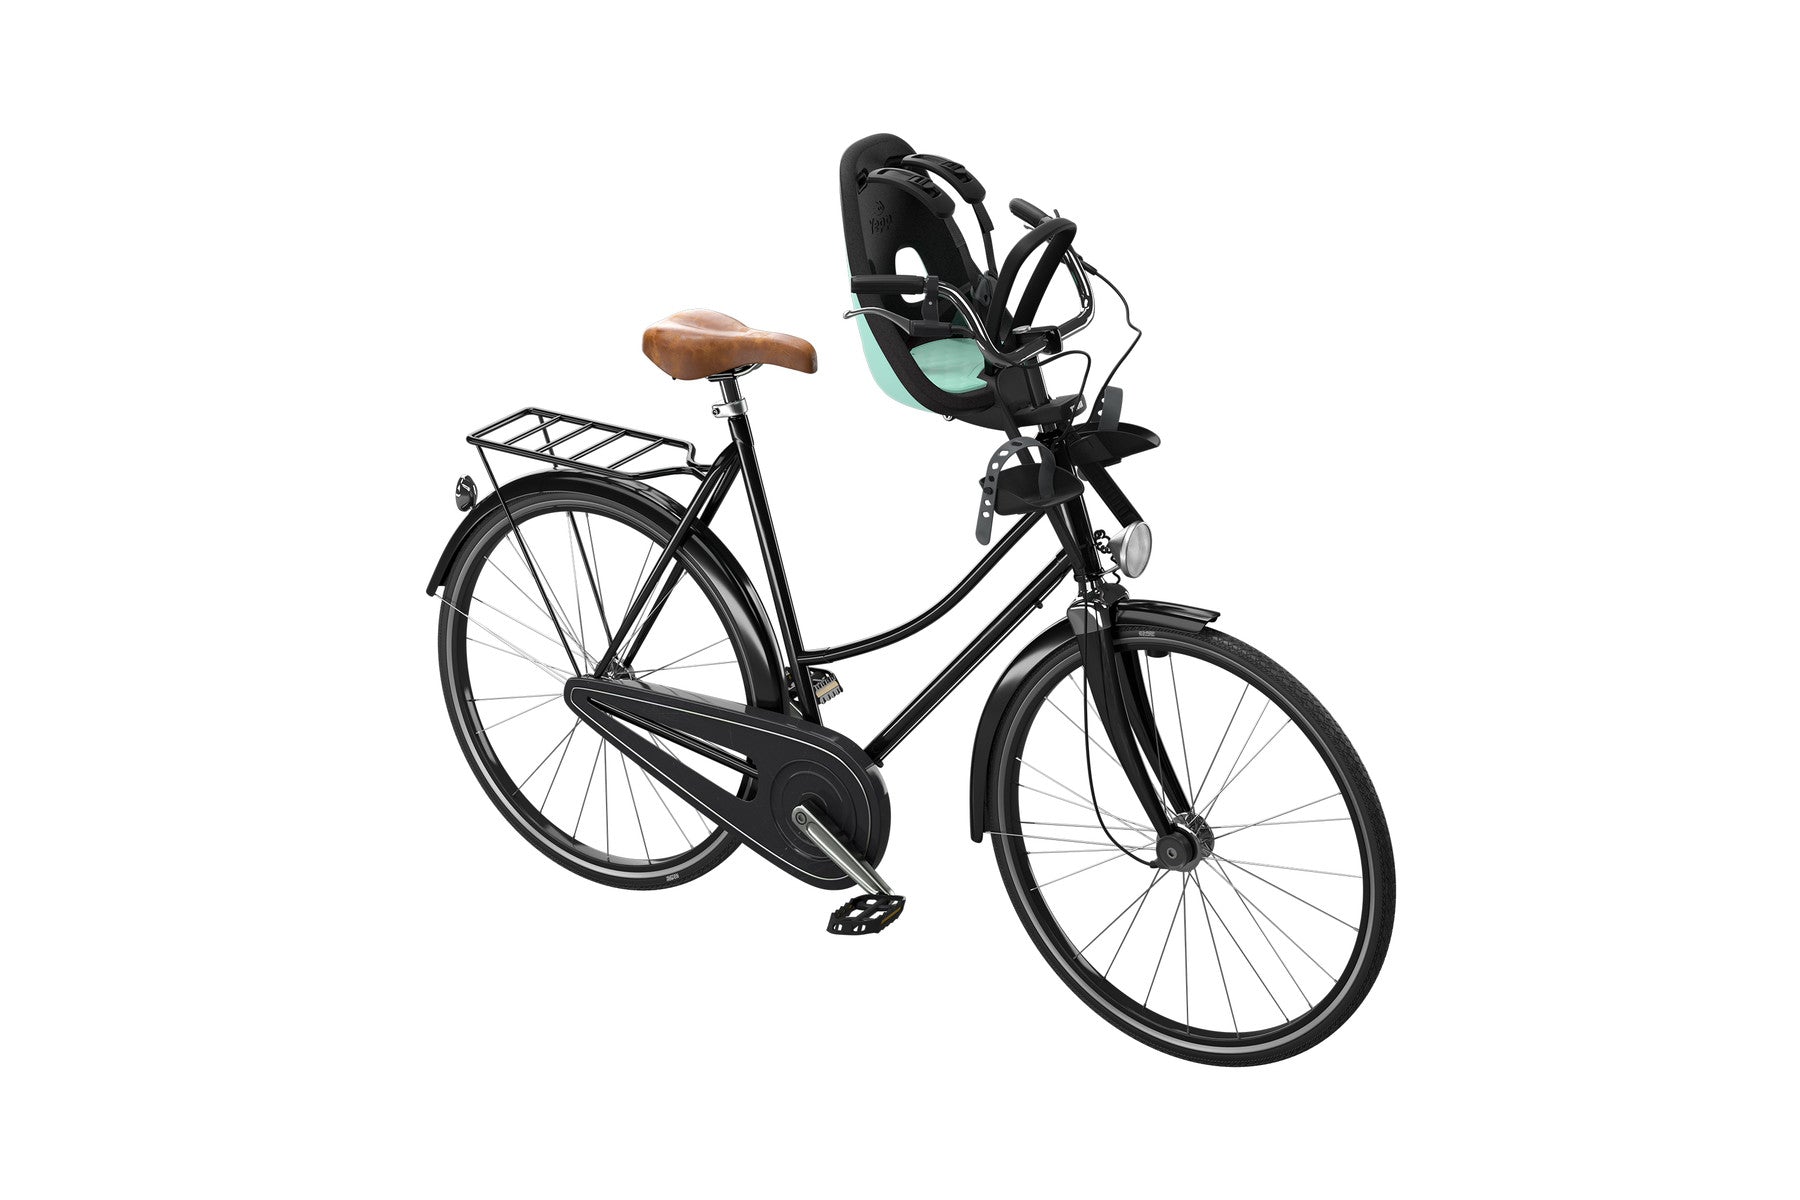 THULE Yepp Nexxt Mini Front Child Bike Seat - ANB Baby -$100 - $300